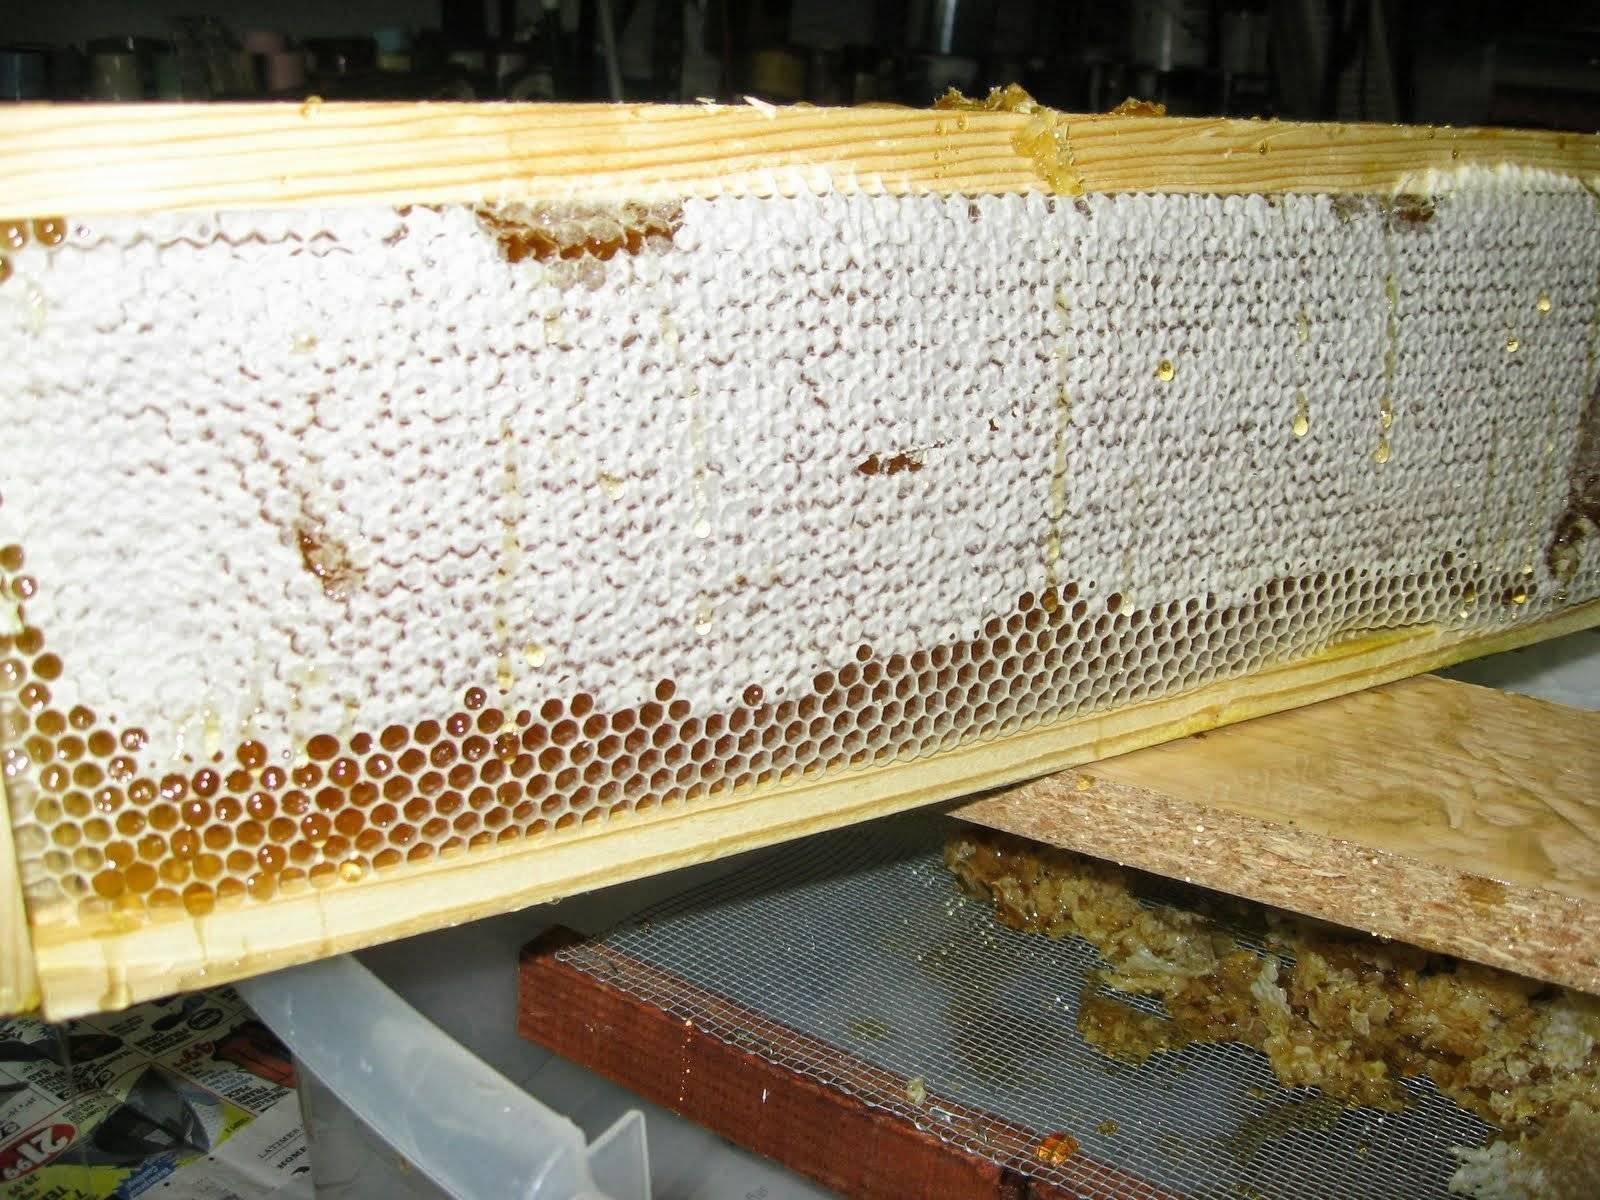 Пчелиный забрус: польза и применение